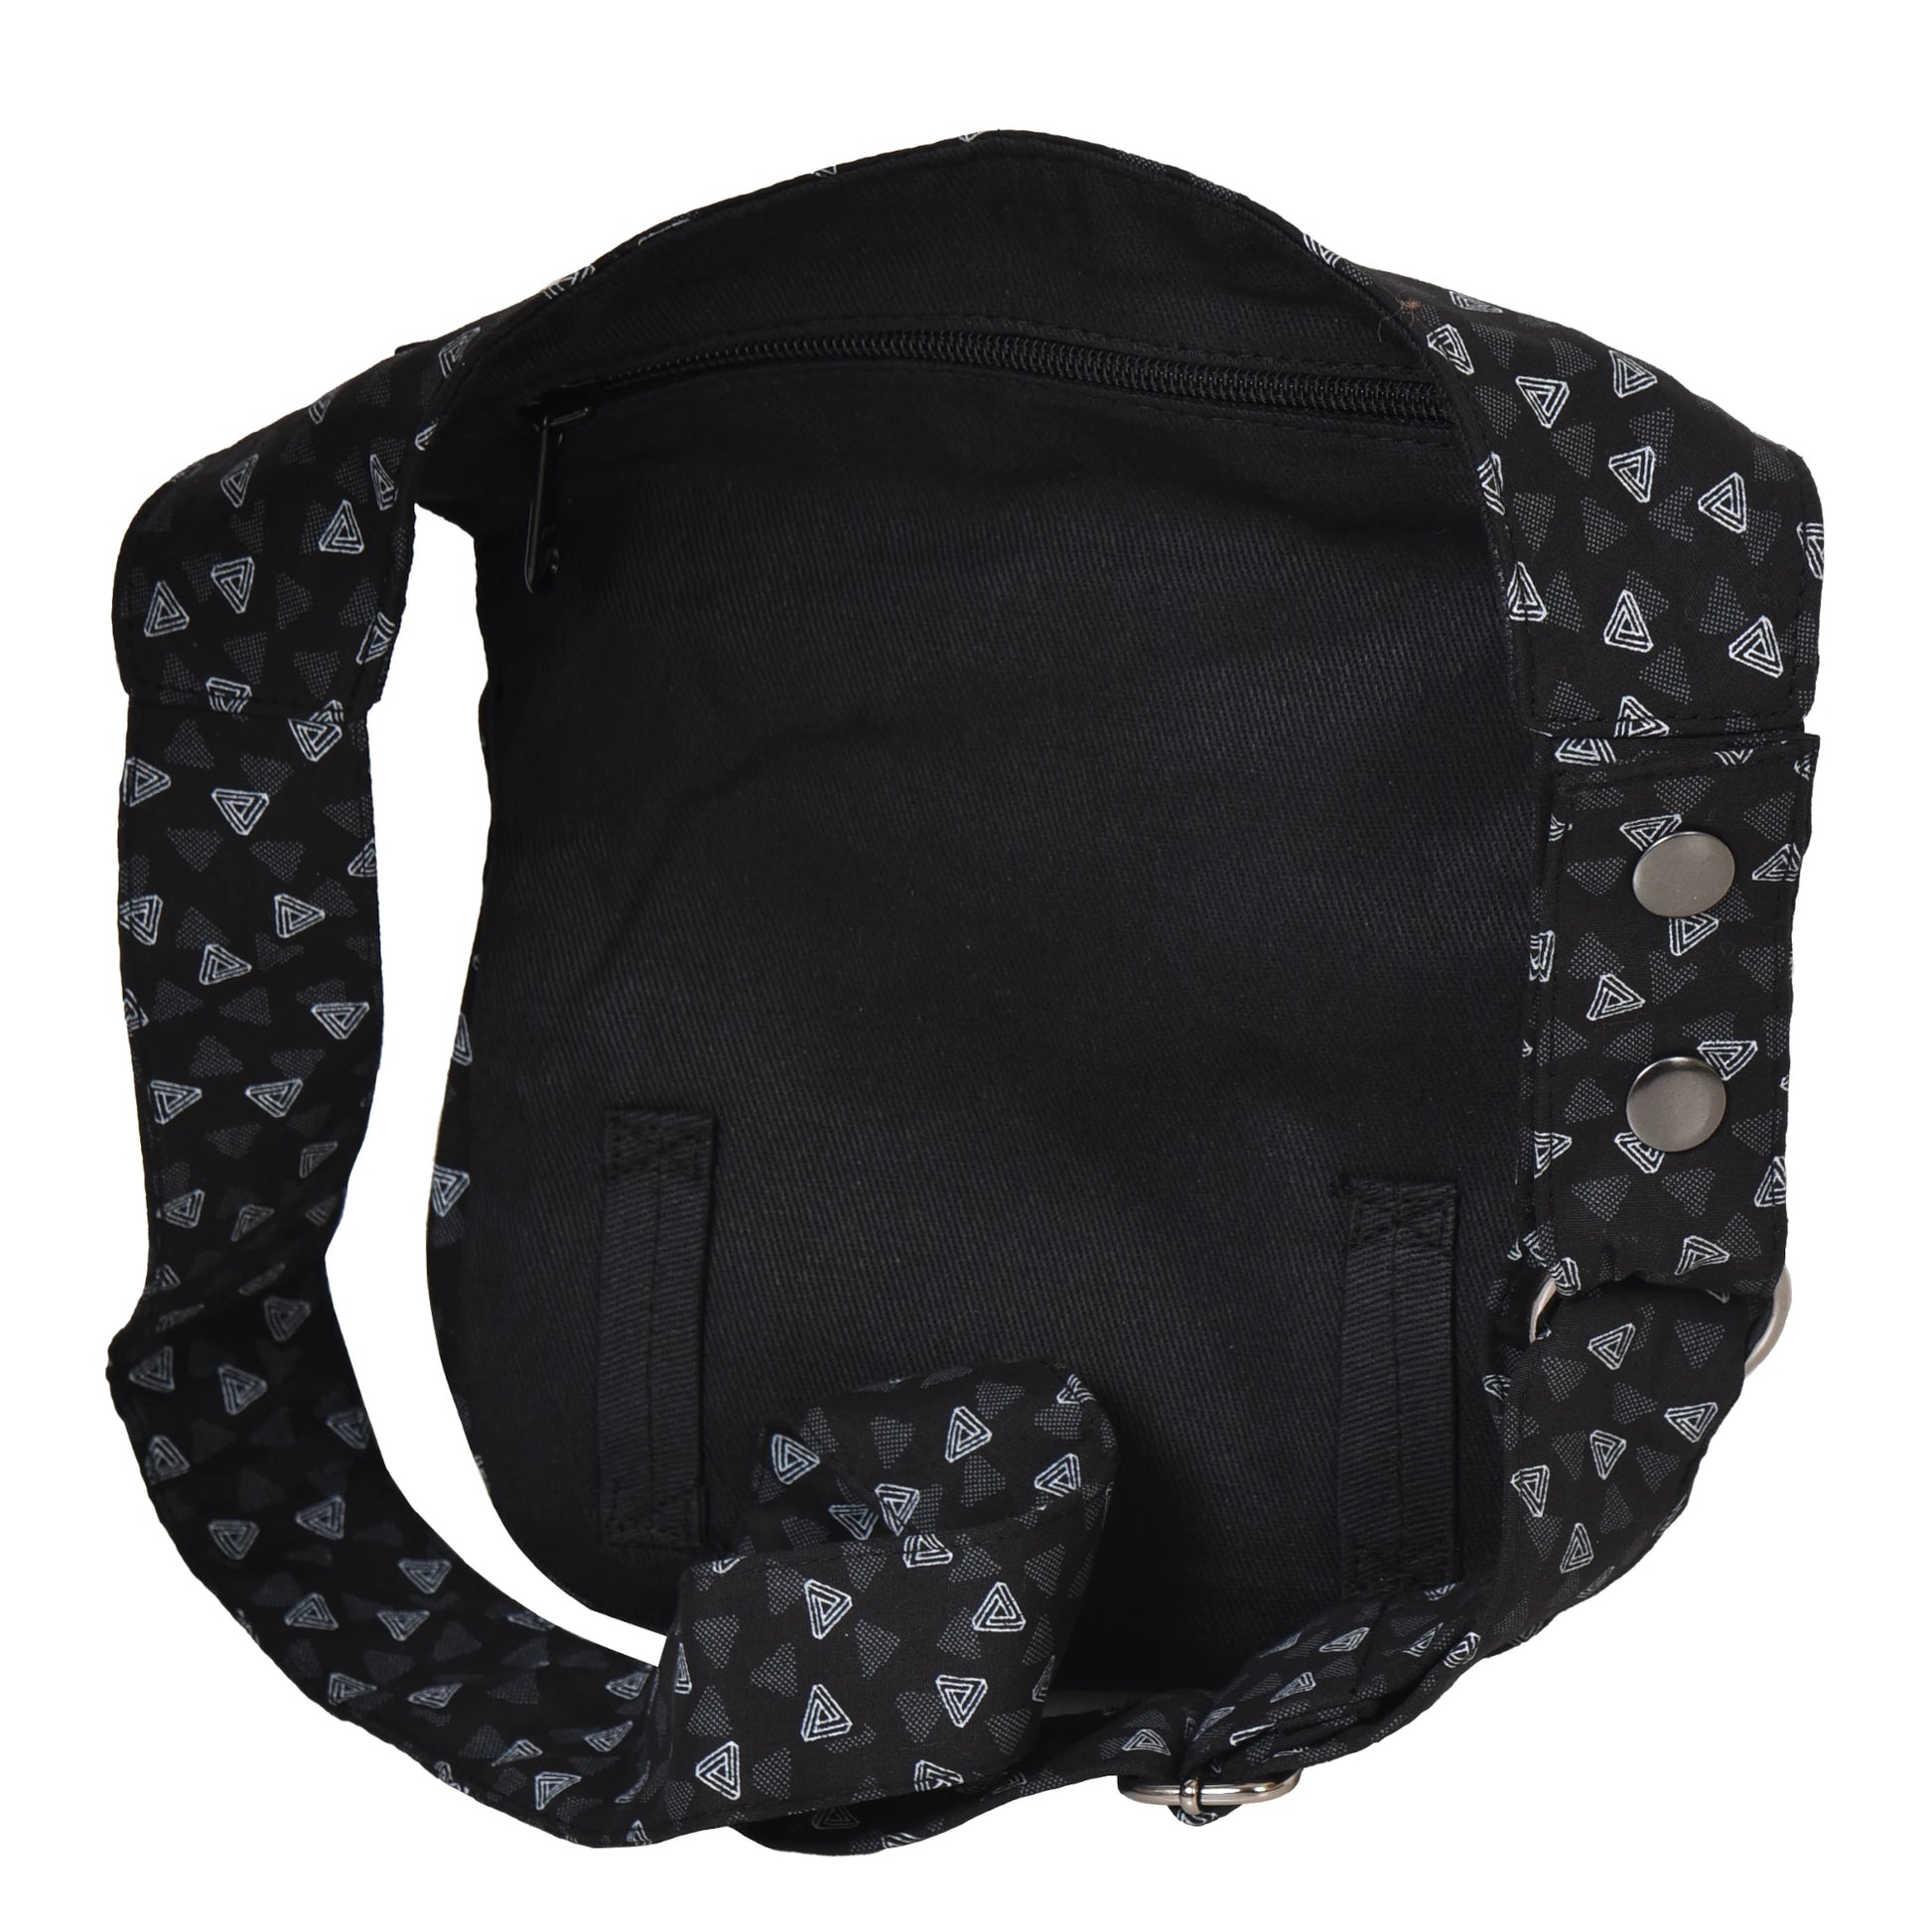 Schwarze Gürteltasche mit Lilien Motiv. Diese Tasche verfügt über ein hinteres Reißverschlussfach und zwei Gürtelschlaufen zur Befestigung eines Beingurtes.